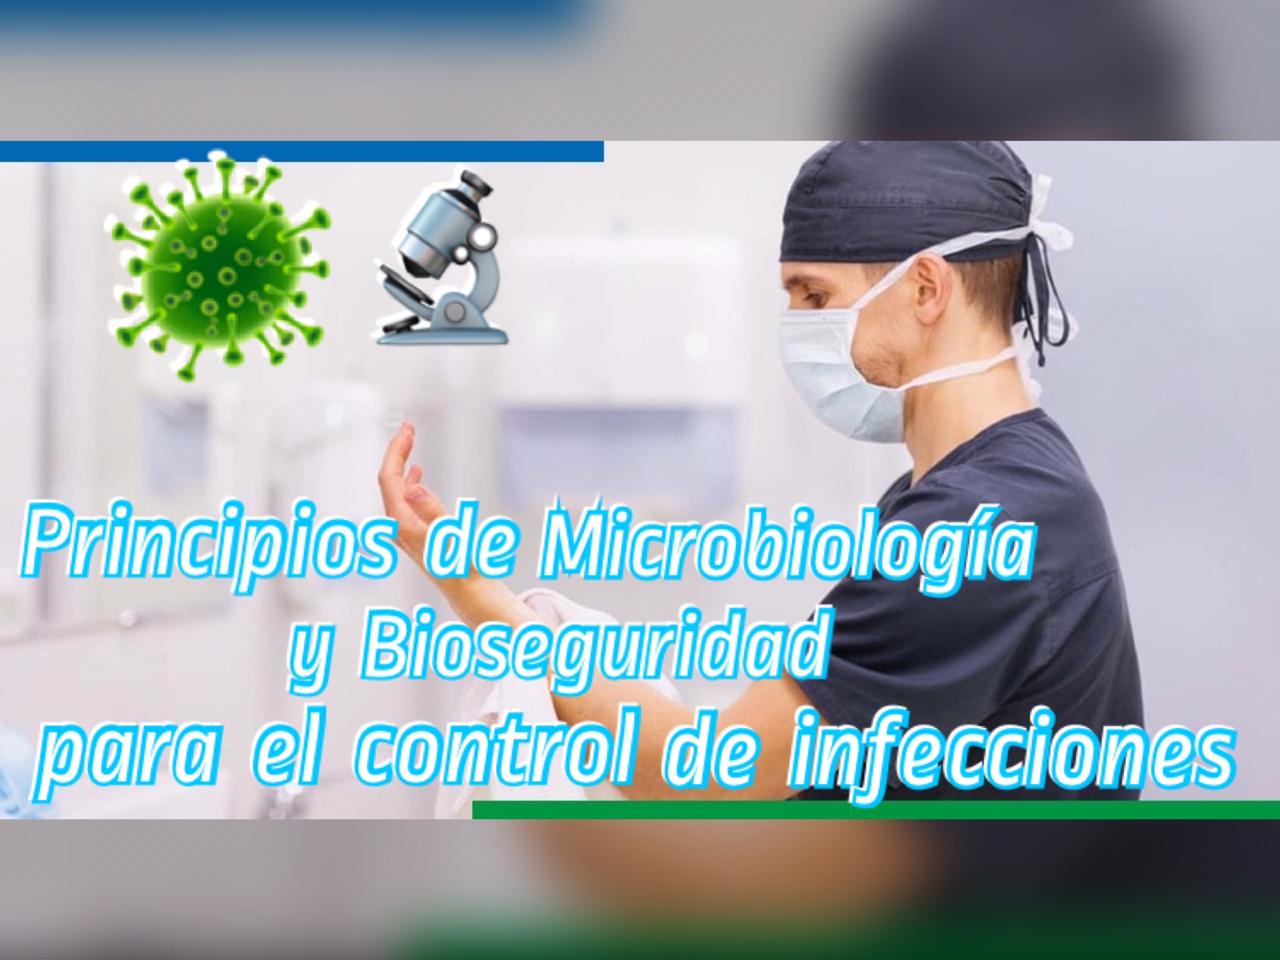 PRINCIPIOS DE MICROBIOLOGIA Y BIOSEGURIDAD PARA EL CONTROL DE INFECCIONES